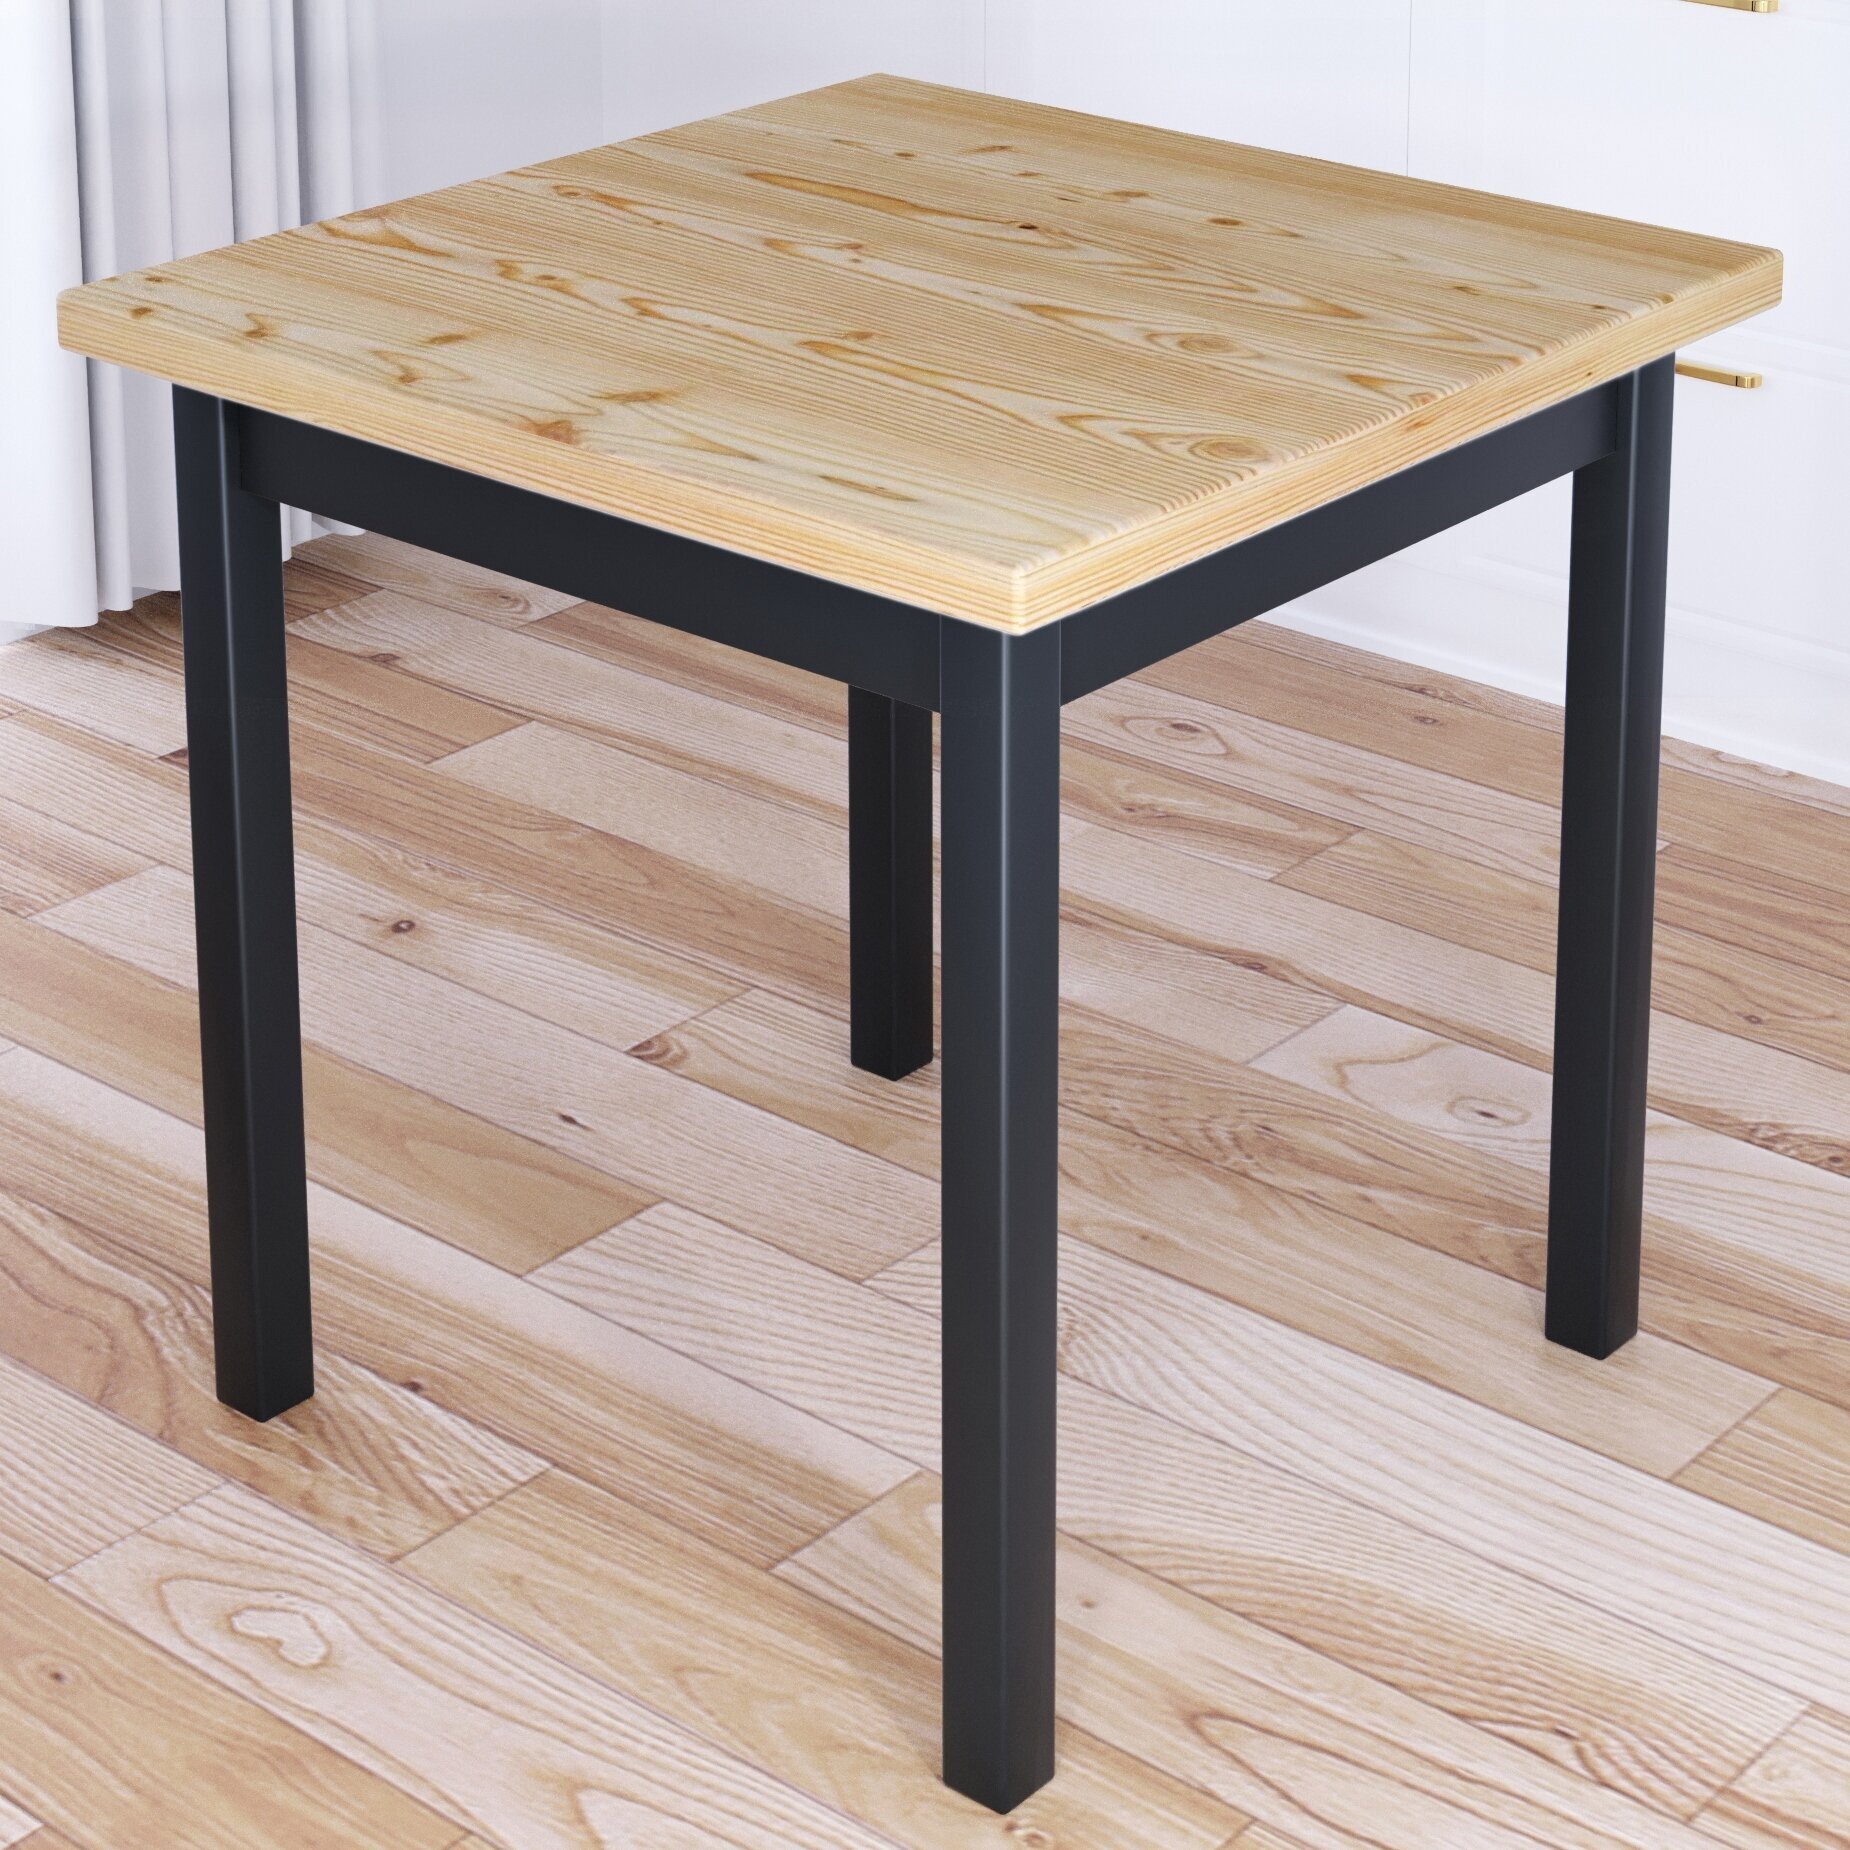 Стол кухонный Классика с квадратной лакированной столешницей из массива сосны 40 мм и ножками цвета антрацит, 70х70х75 см